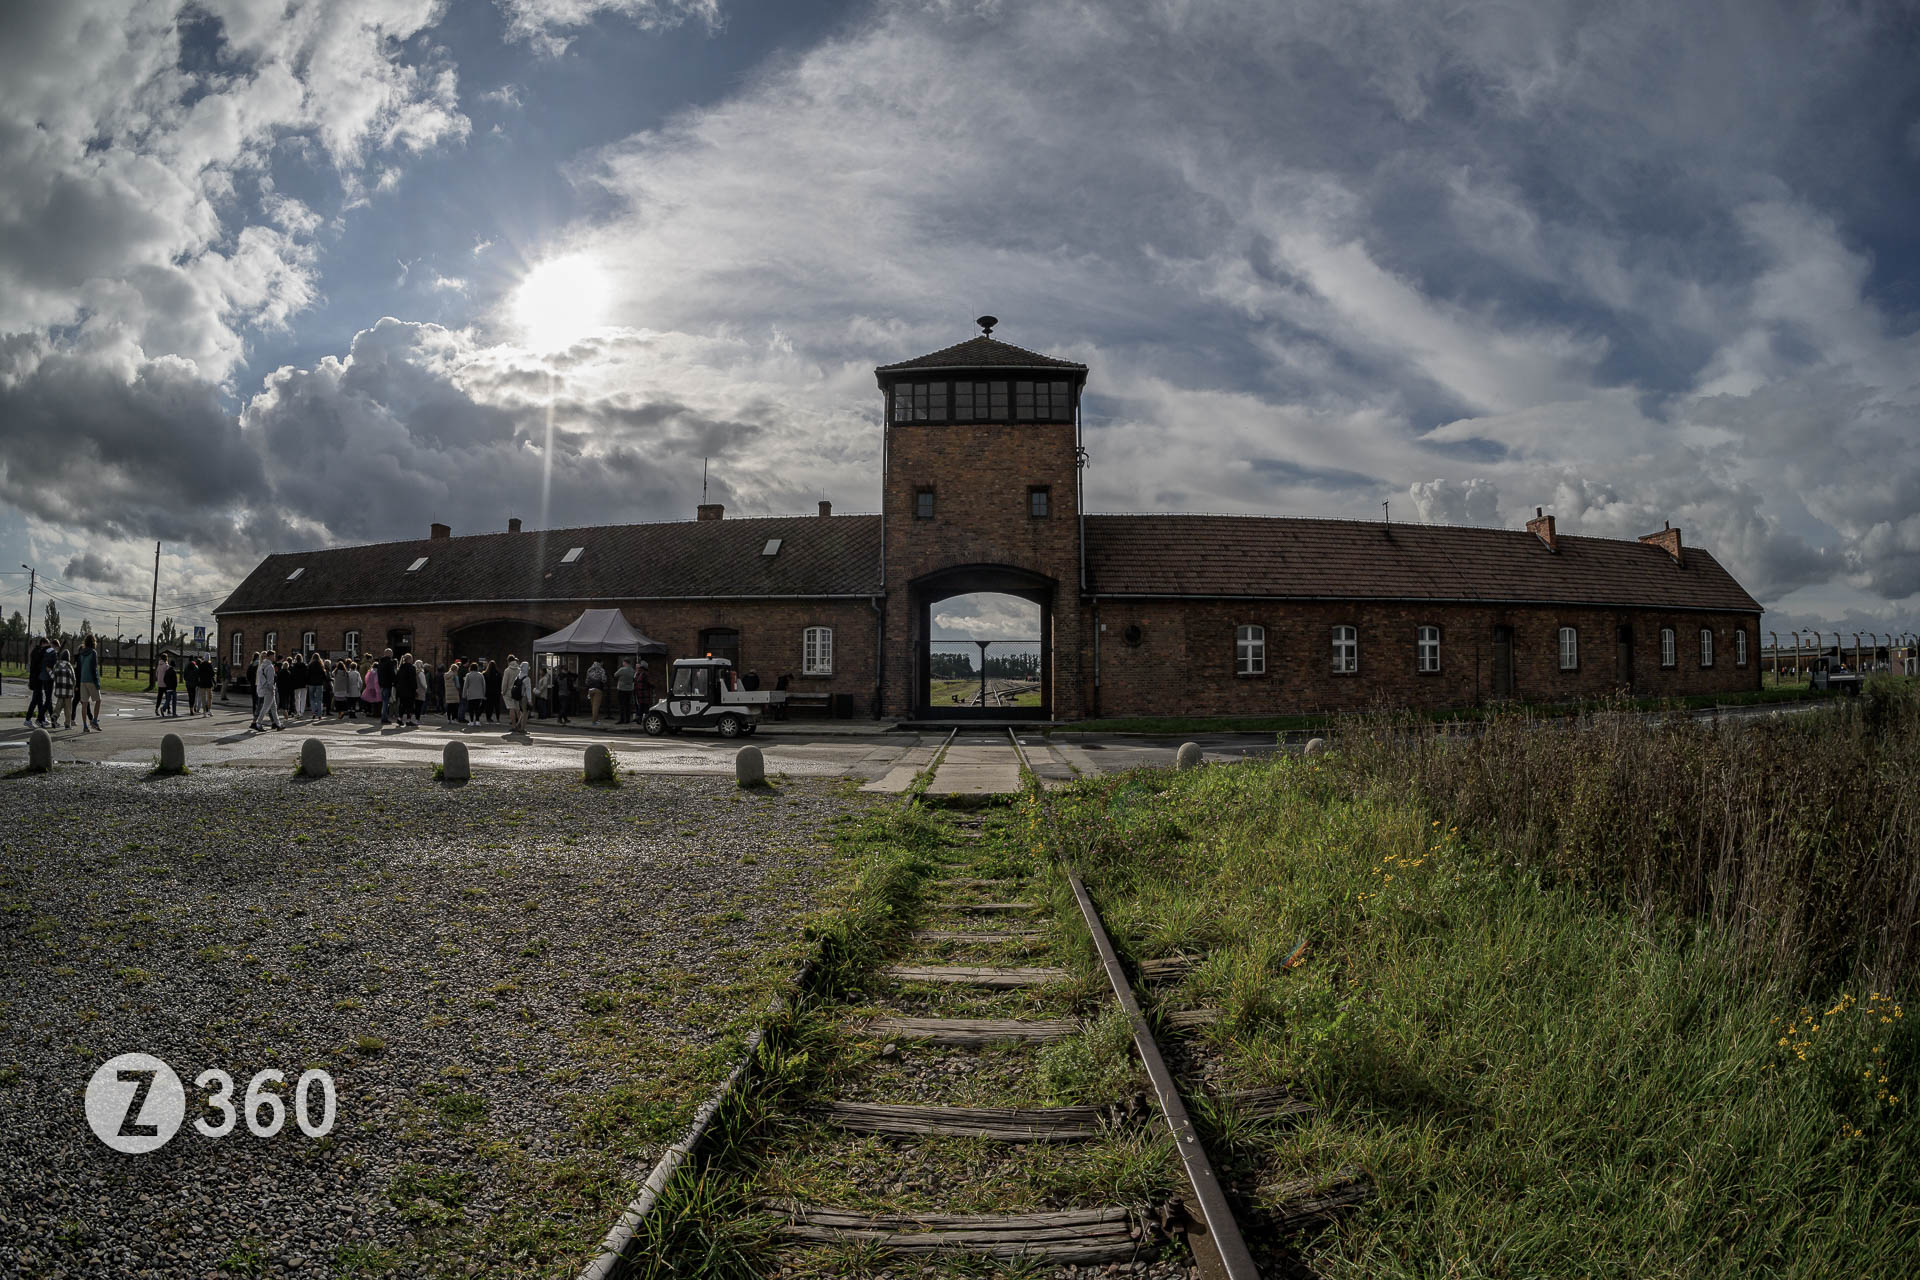 The Entrance to Auschwitz II, Birkenau